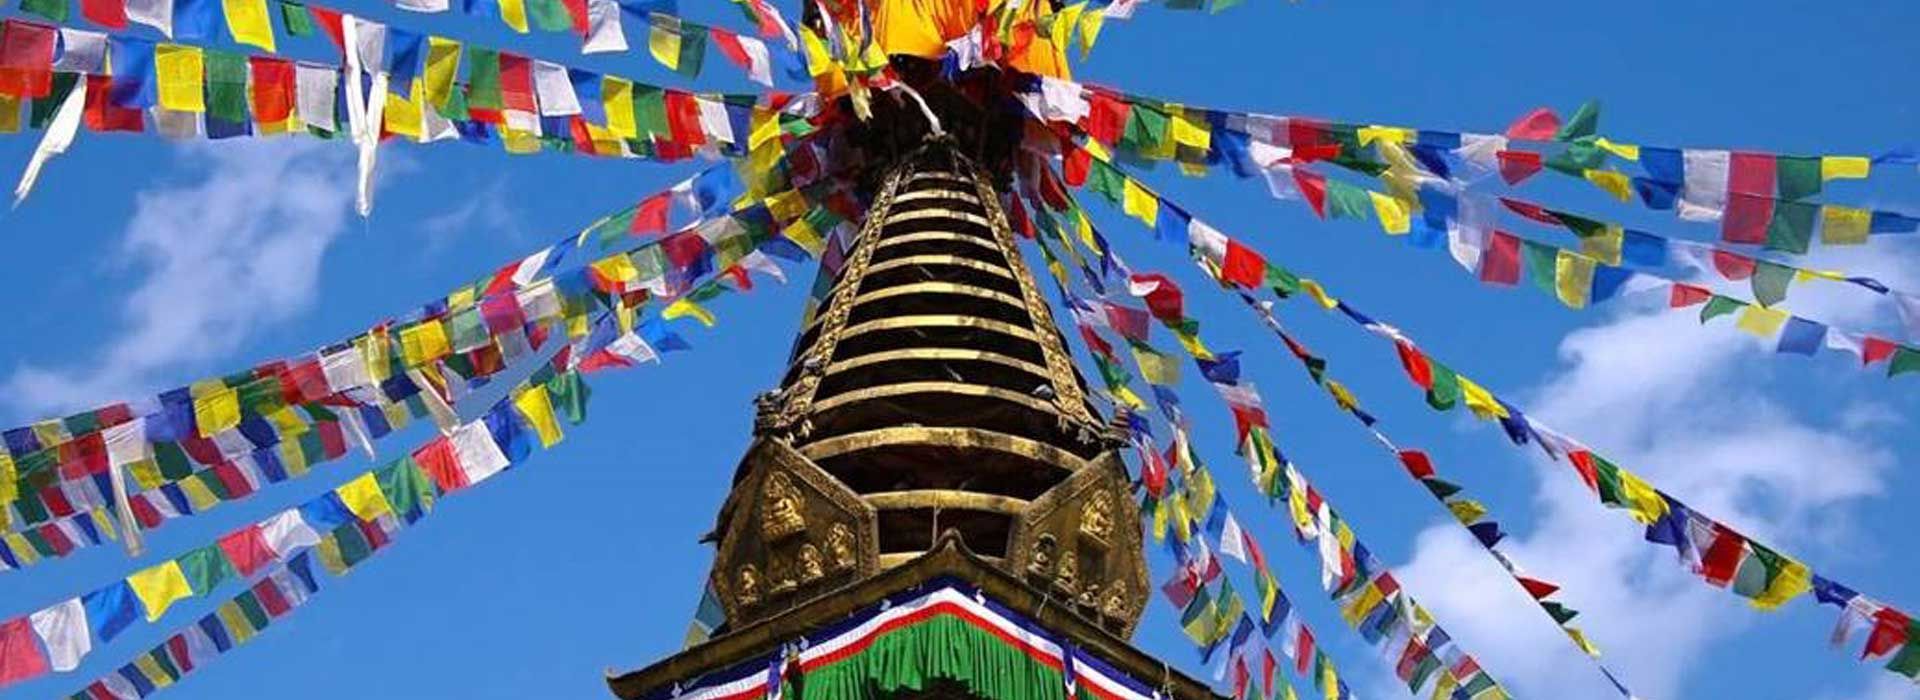 Νεπάλ "Η Μέκκα της περιπέτειας"